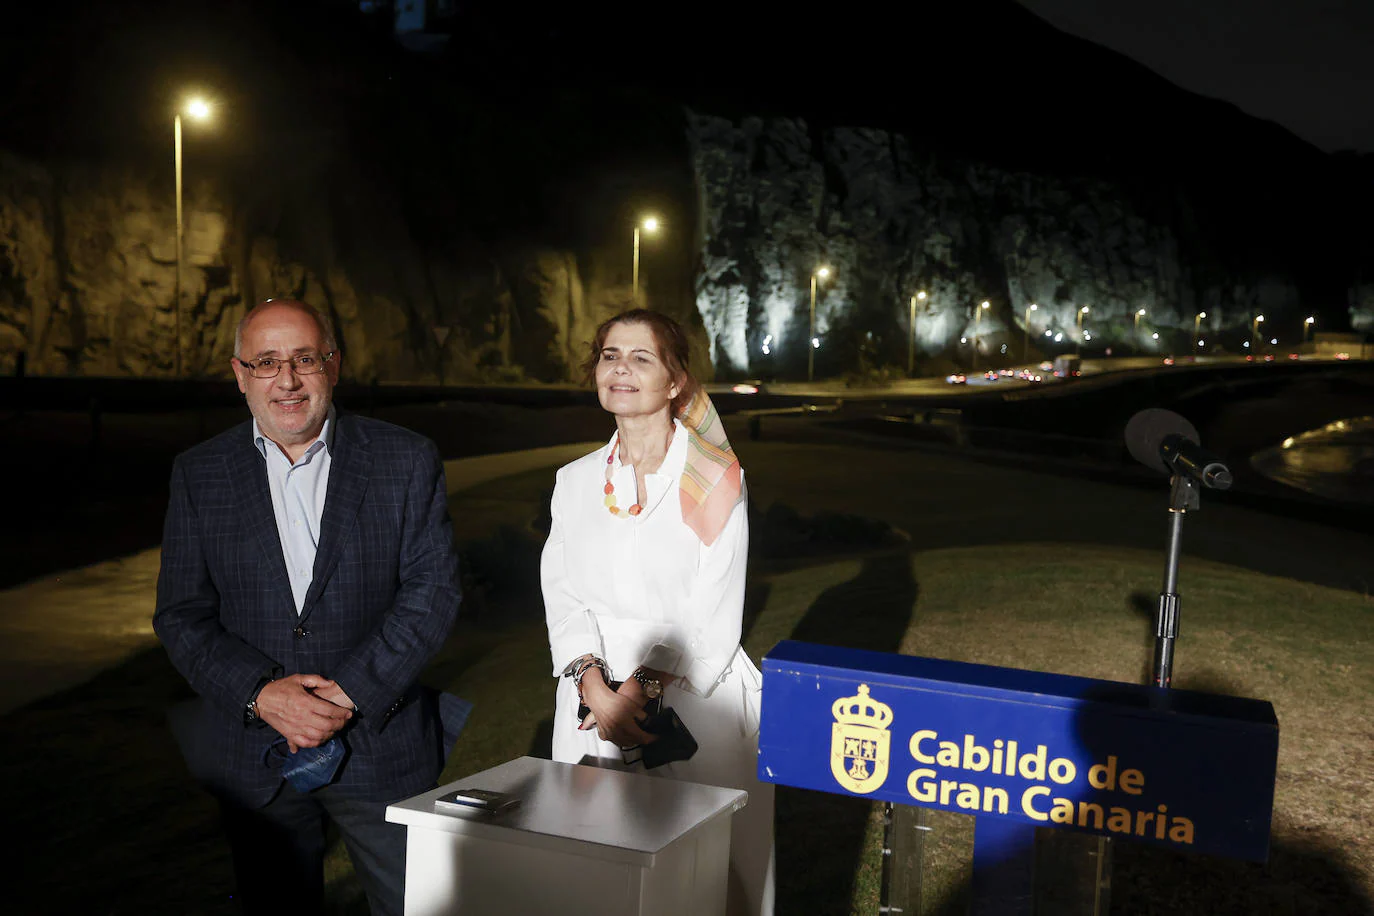 Fotos: El Cabildo ilumina el acceso a la capital grancanaria con la mejora paisajística de La Laja